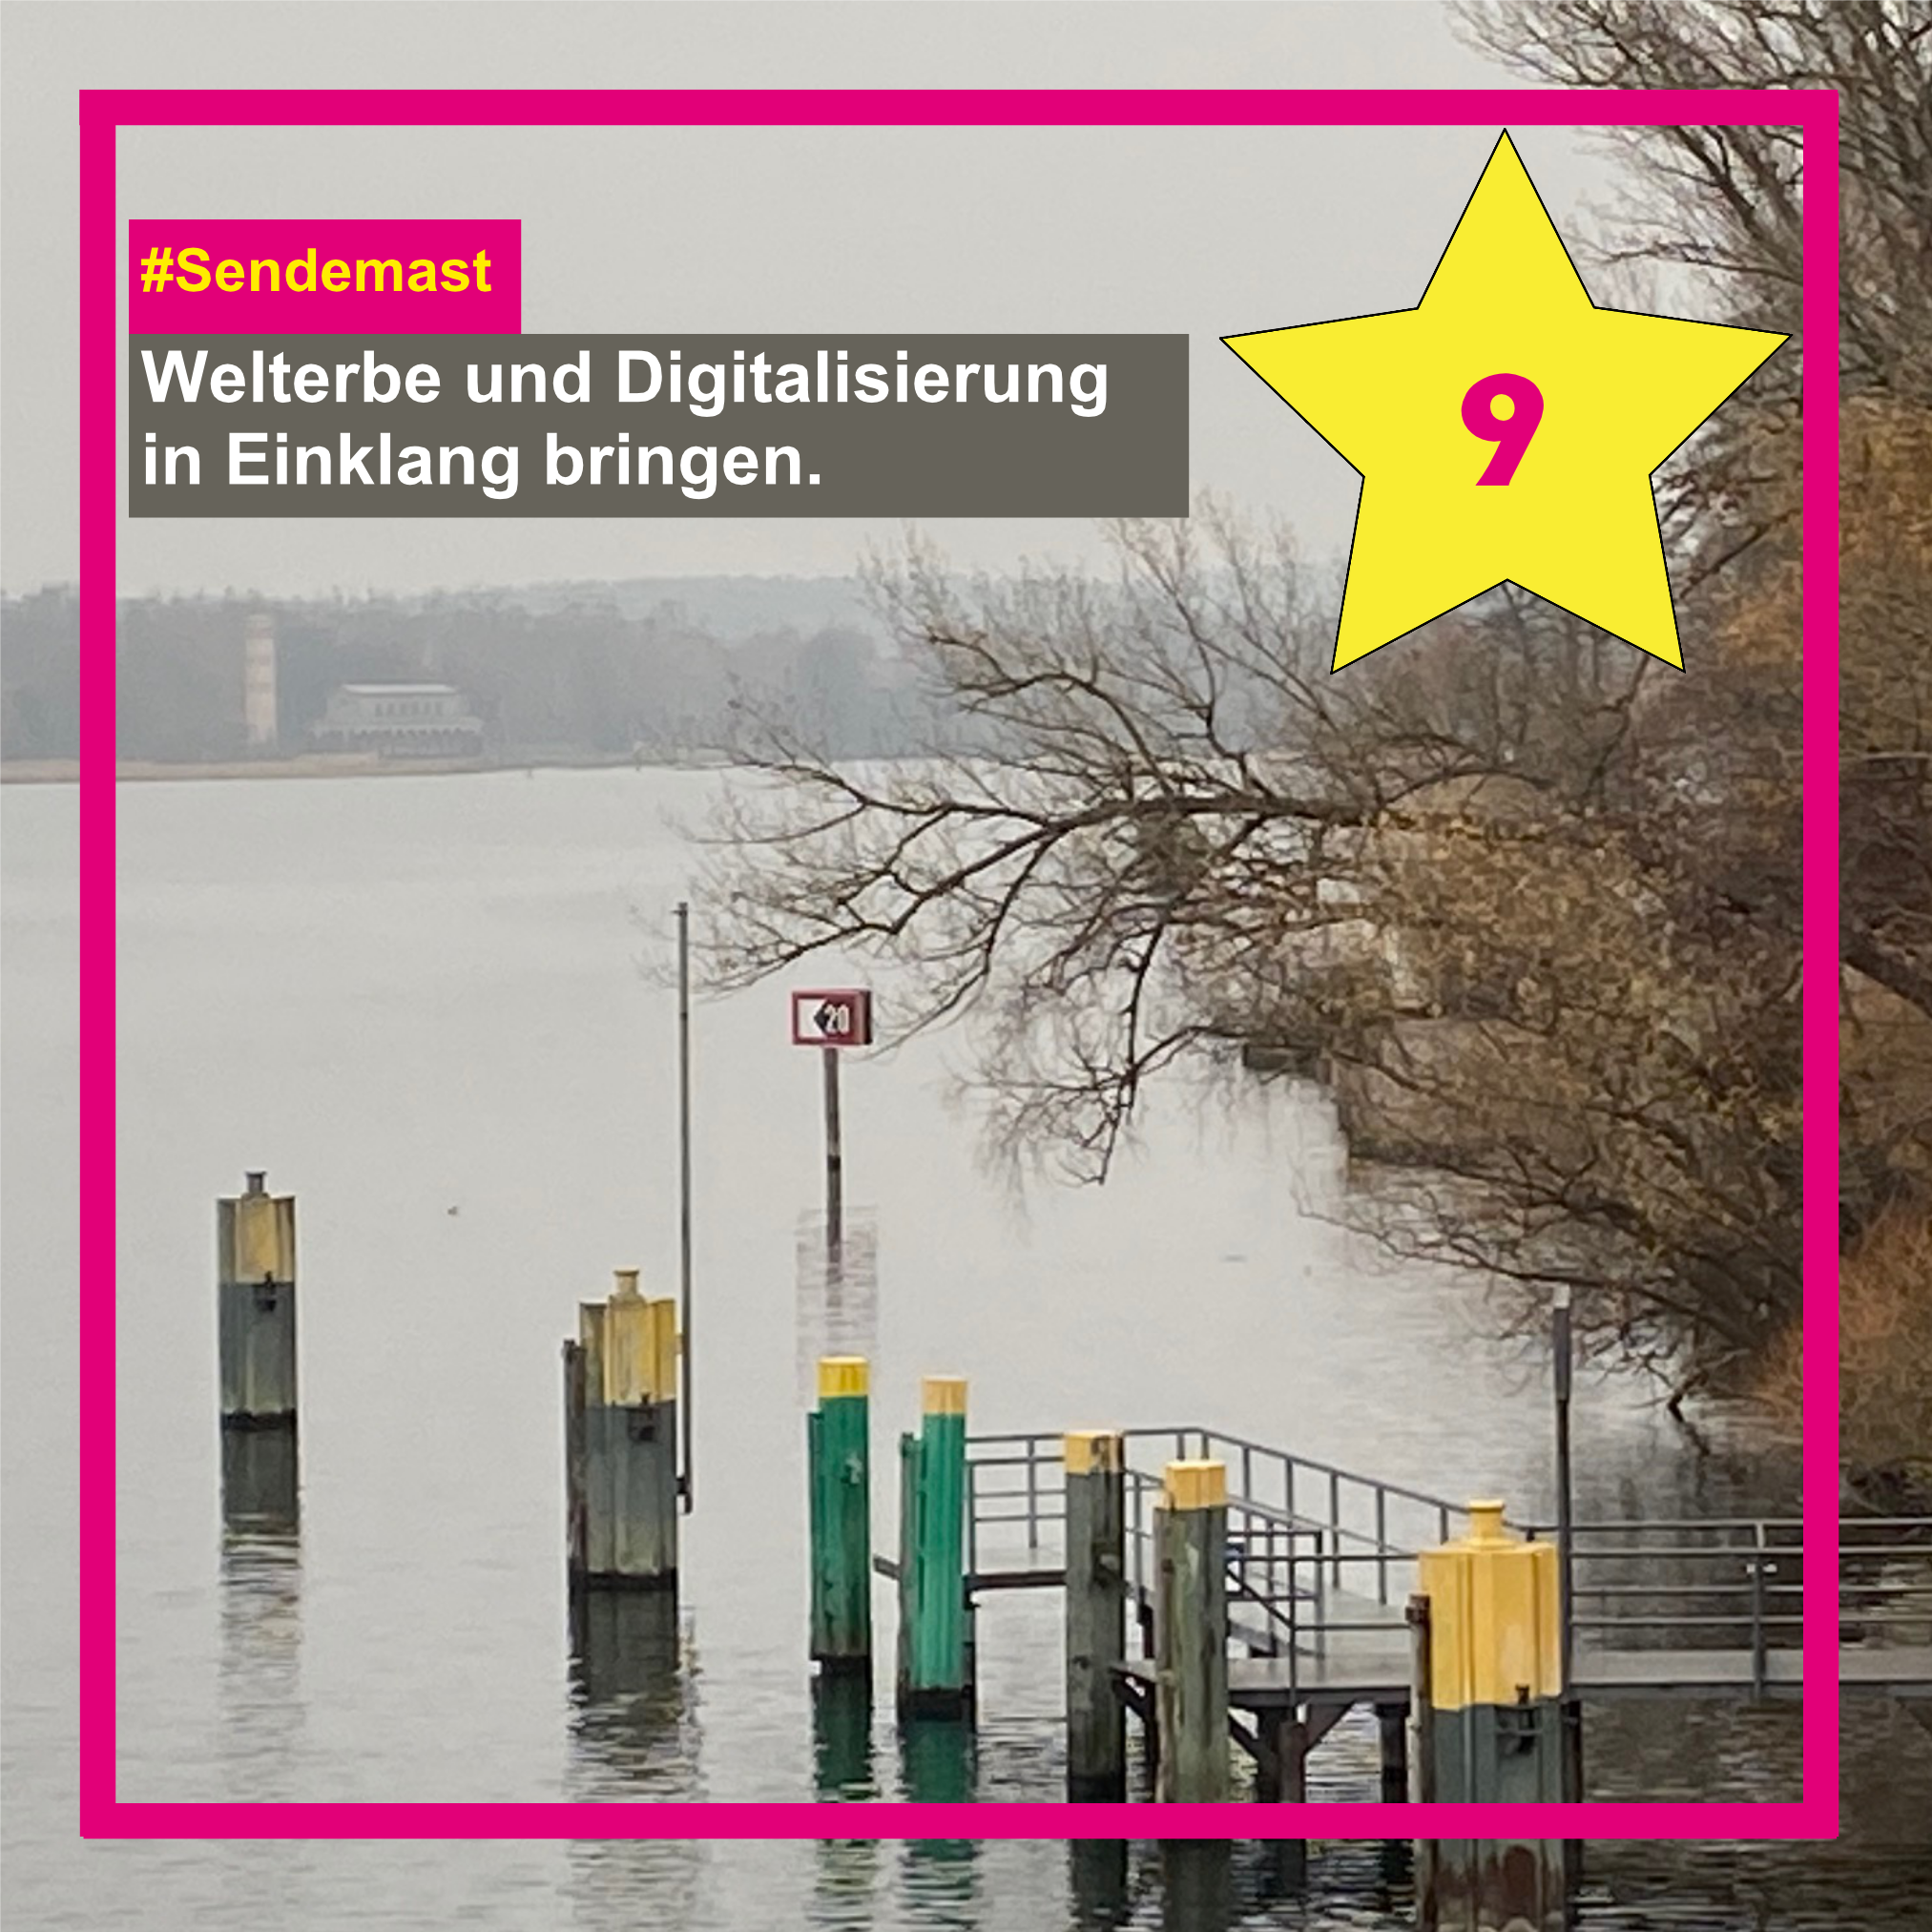 Sendemast in Potsdam - Welterbe und Digitalisierung in Einklang bringen